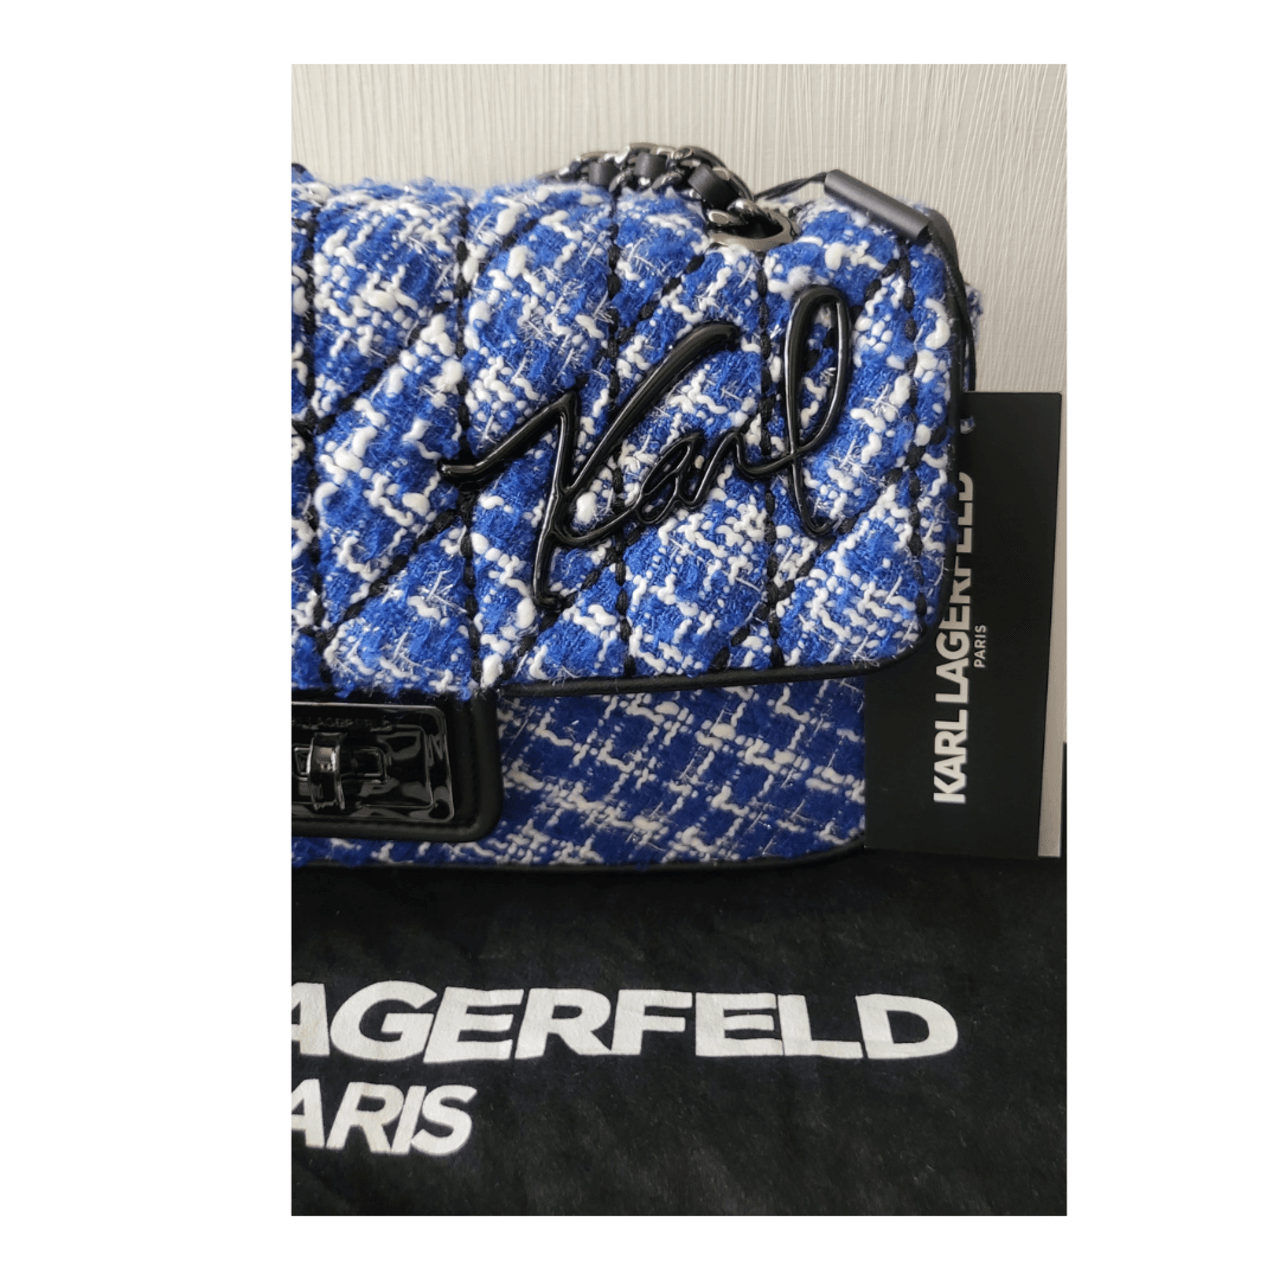 Karl Lagerfeld Blue Tweed Shoulder Bag